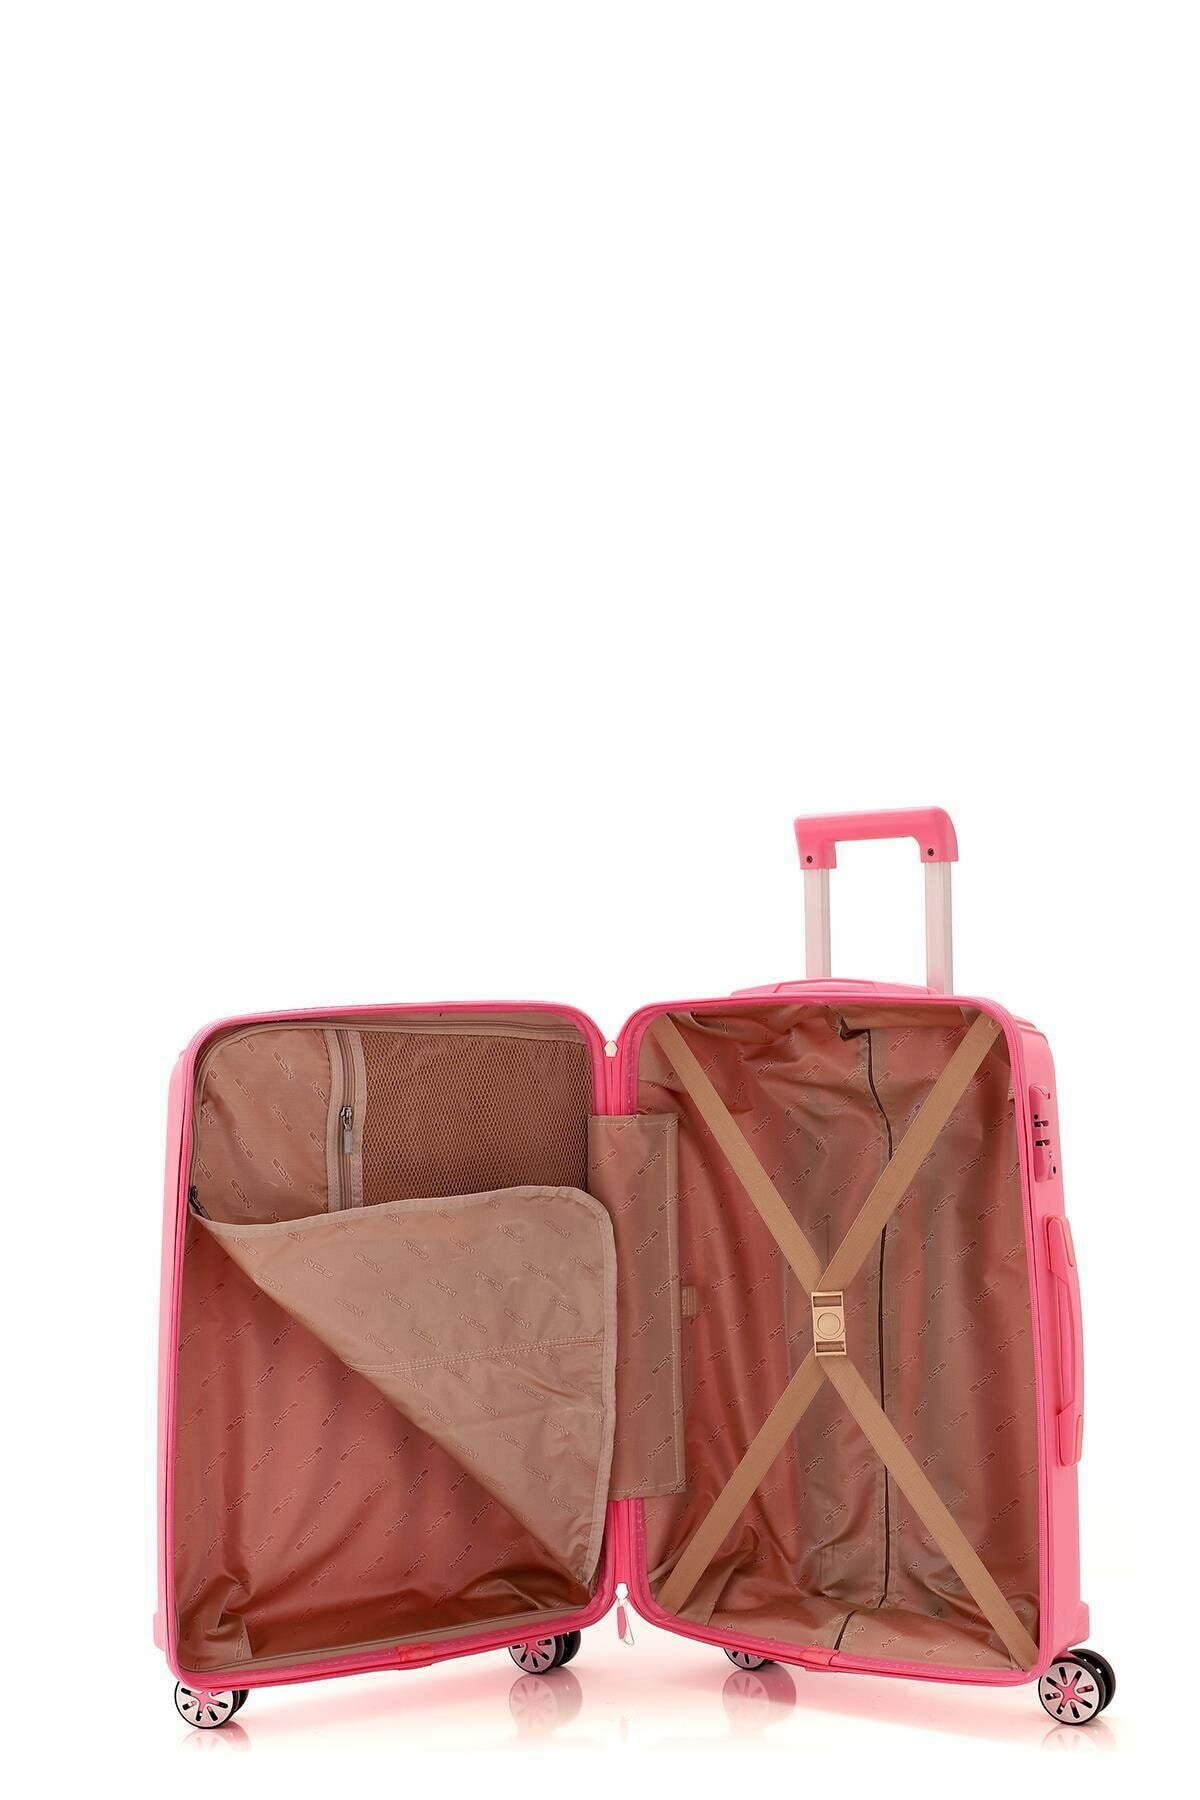 Средний чемодан из полипропилена MCS V305 M PINK! Для 18 кг! - 2